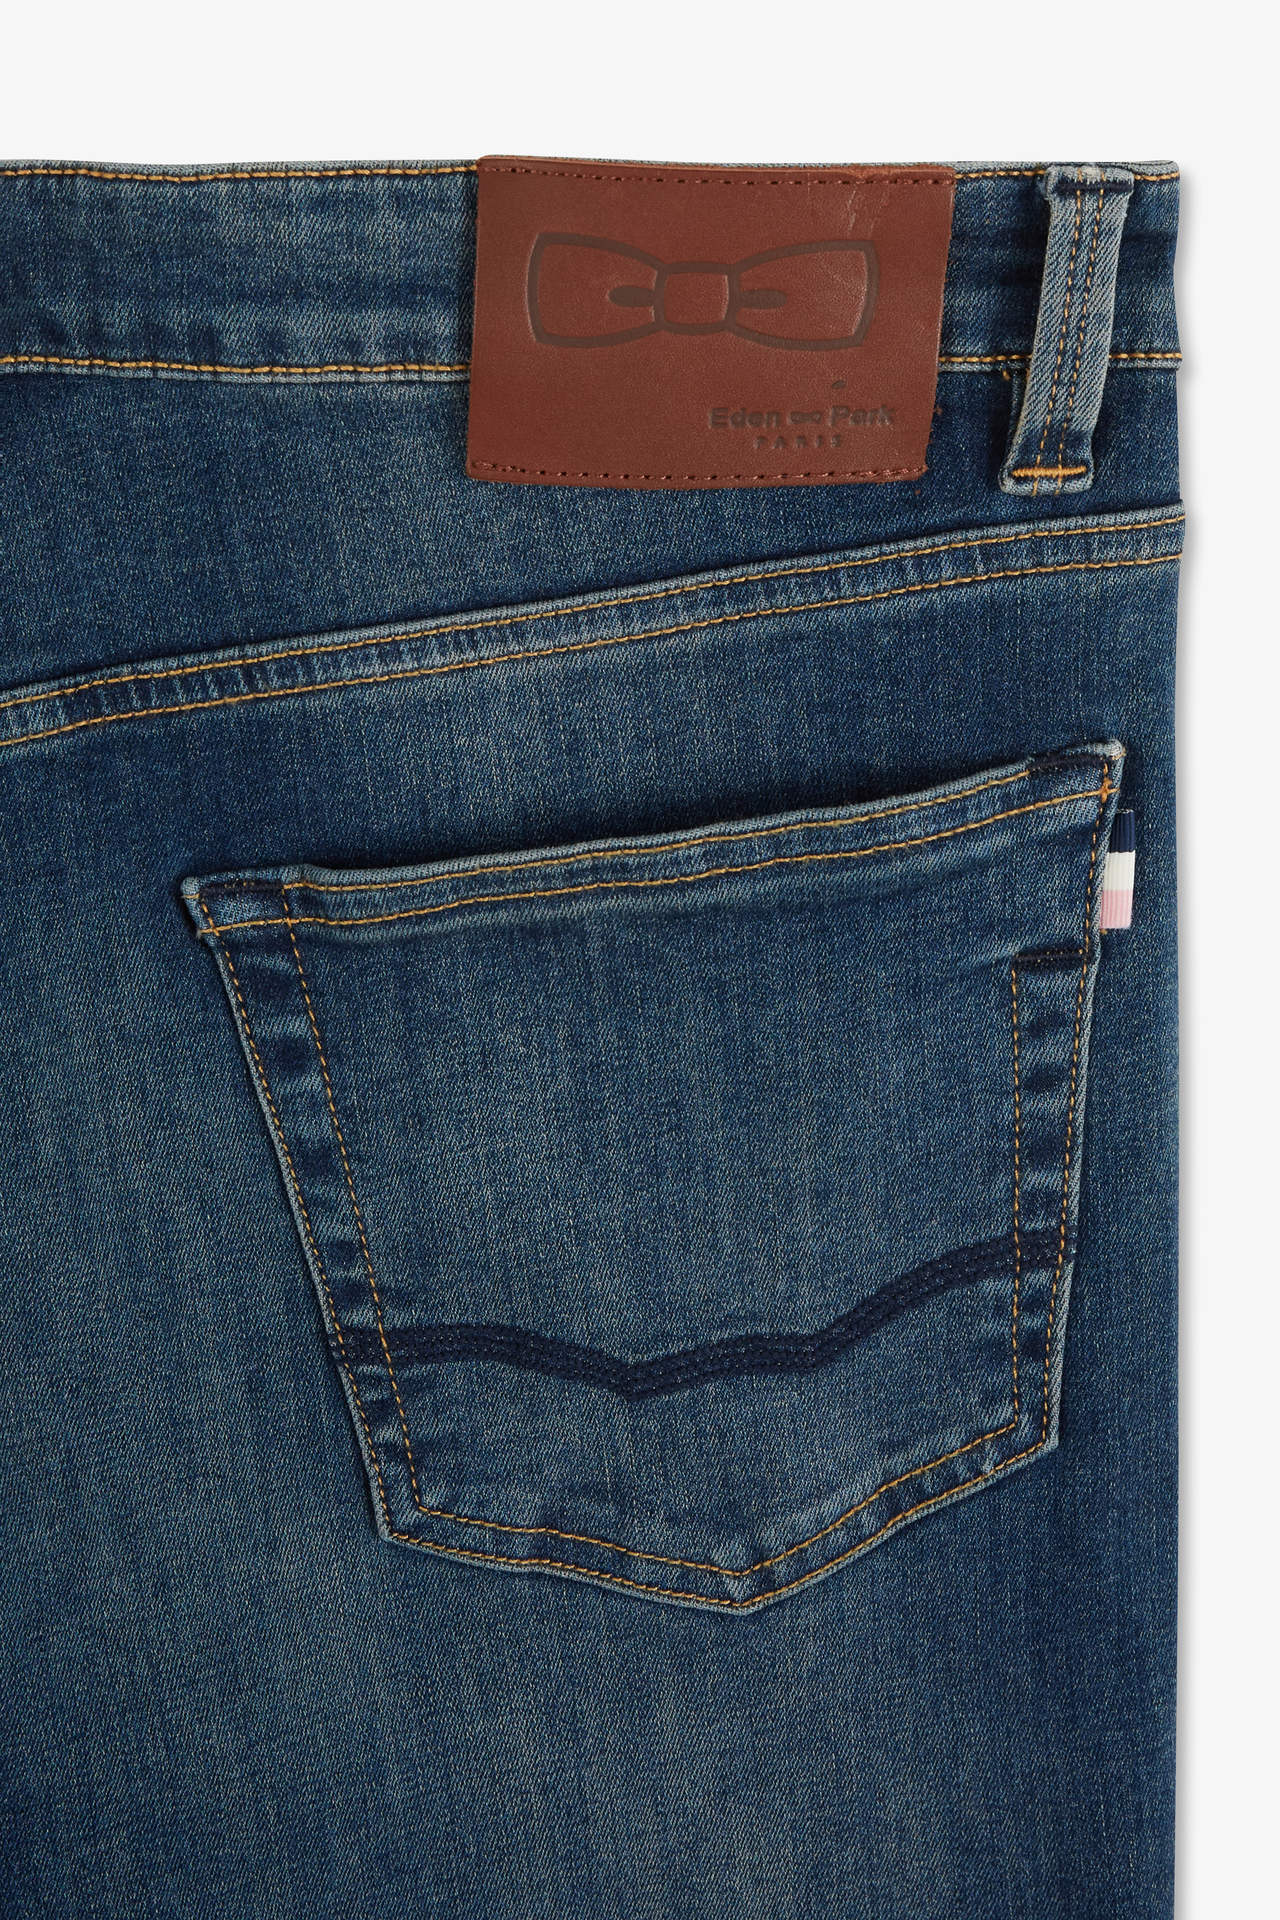 Jean bleu 5 poches - Image 7